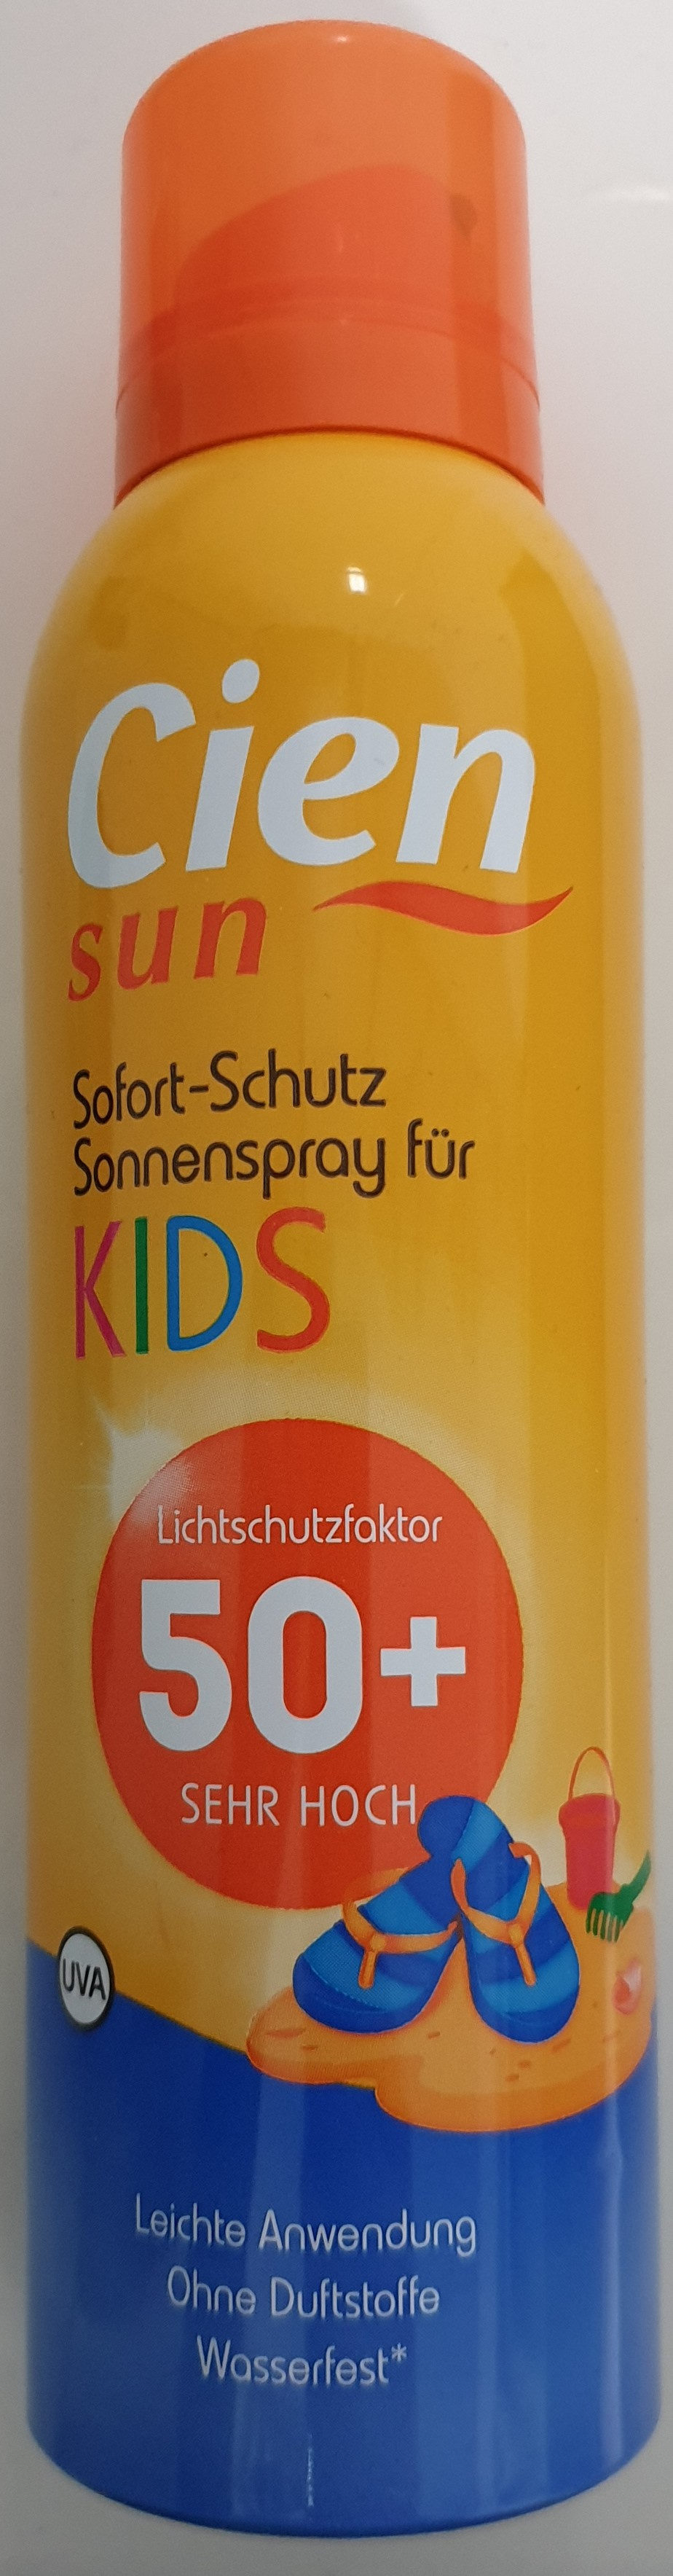 Sofort-Schutz Sonnenspray für Kids 50+ - Produktas - de